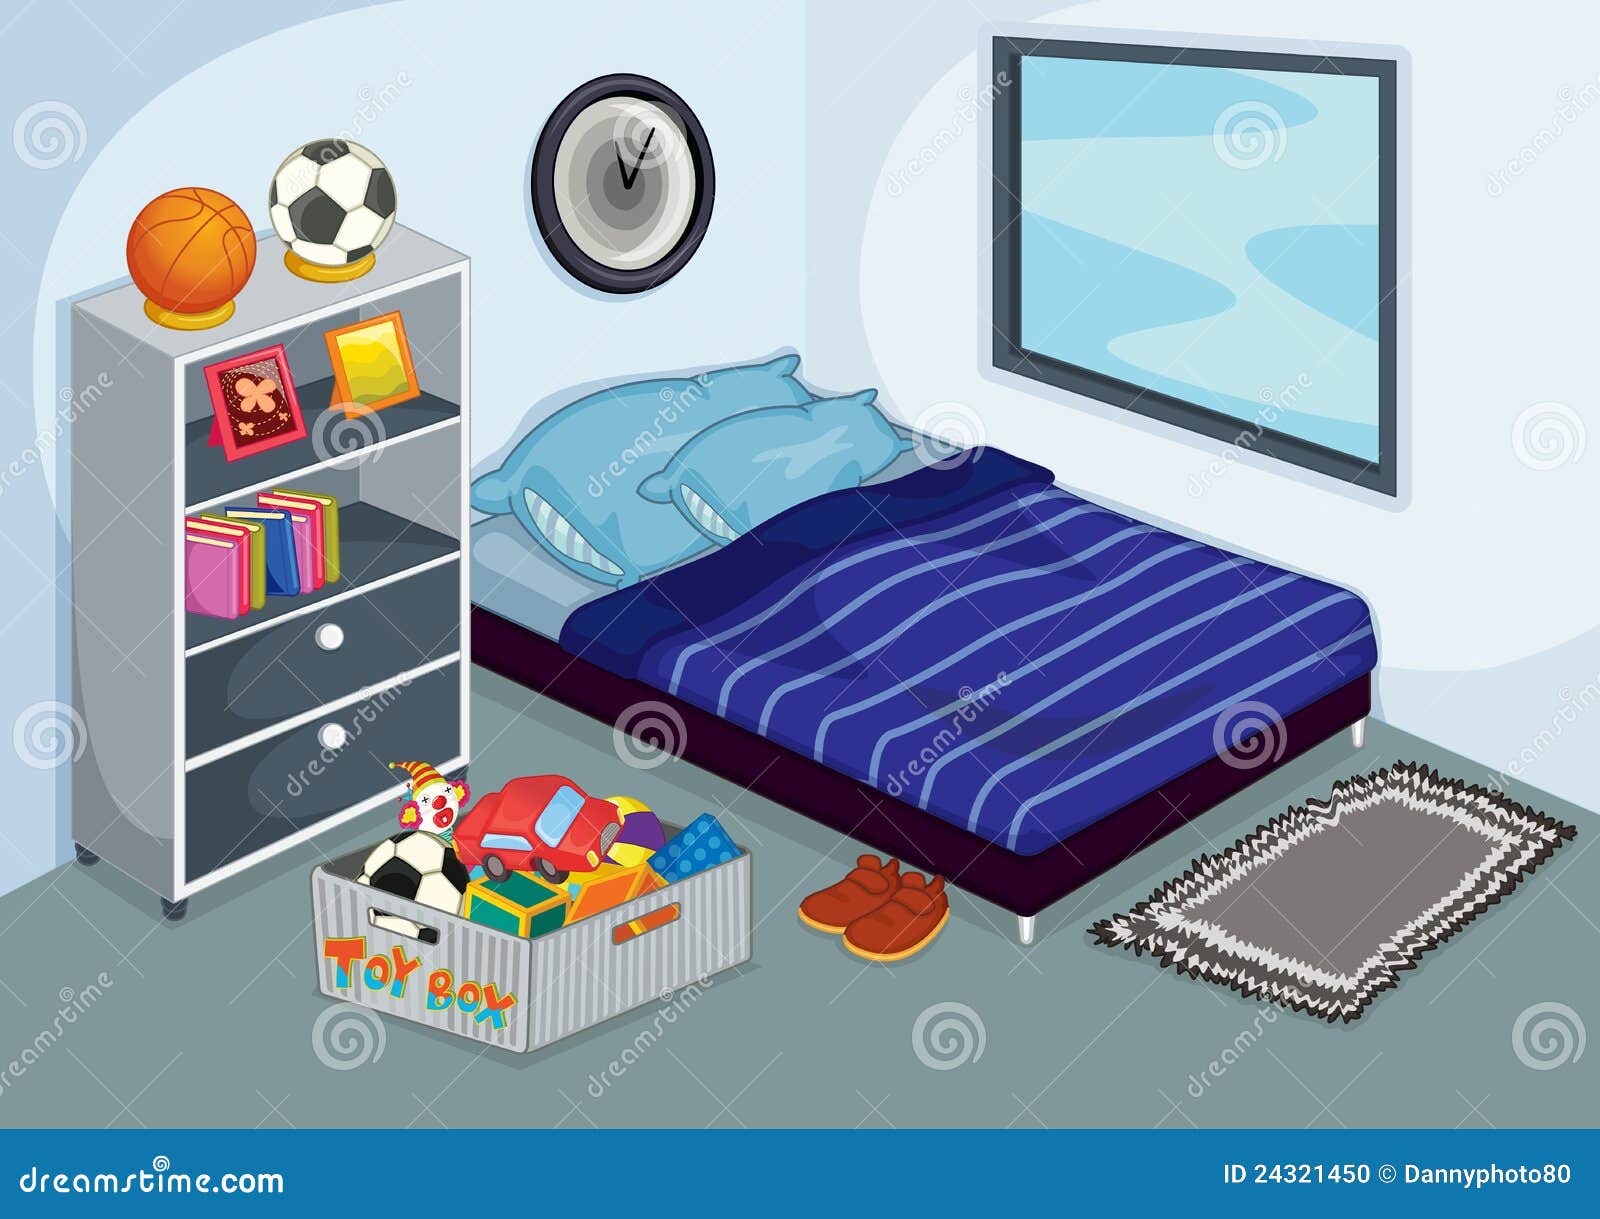 Messy Bedroom Stock Photo - Image: 24321450